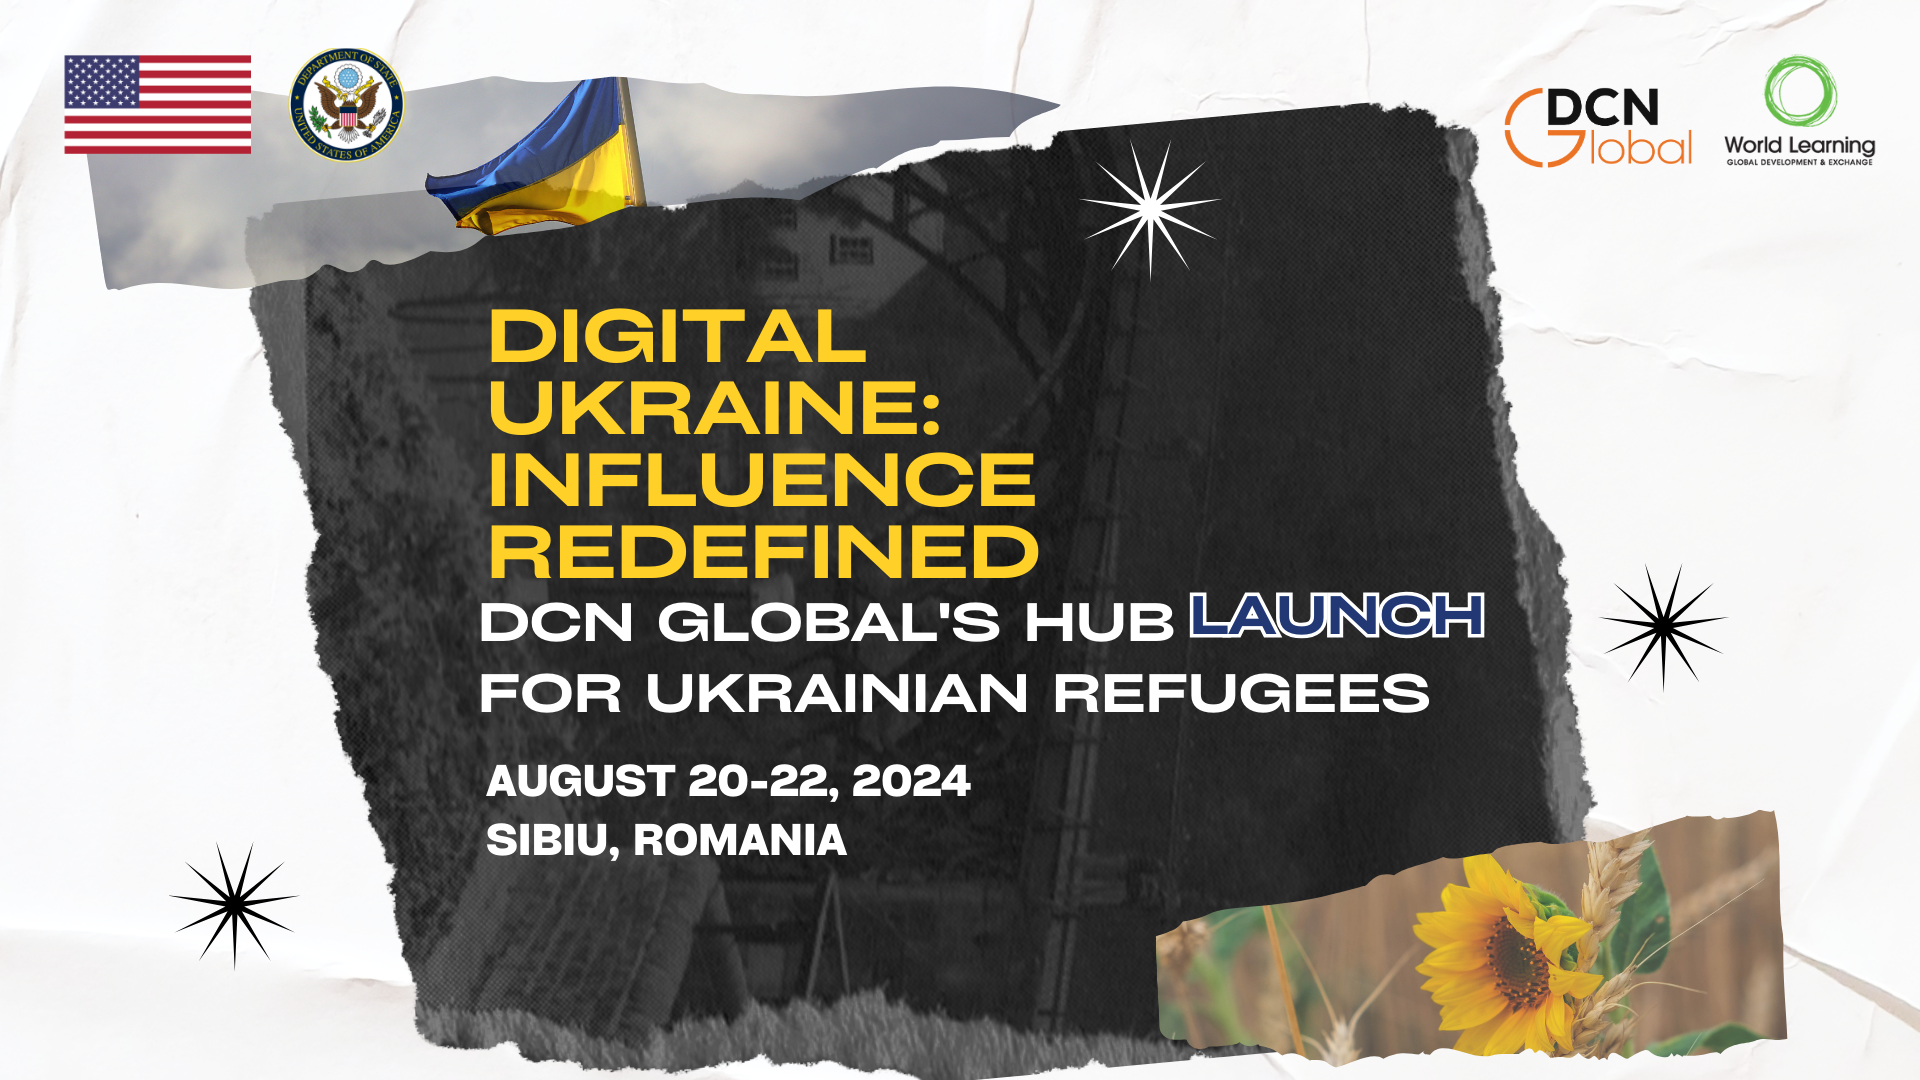 August 20-22: Digital Ukraine: Influence Redefined